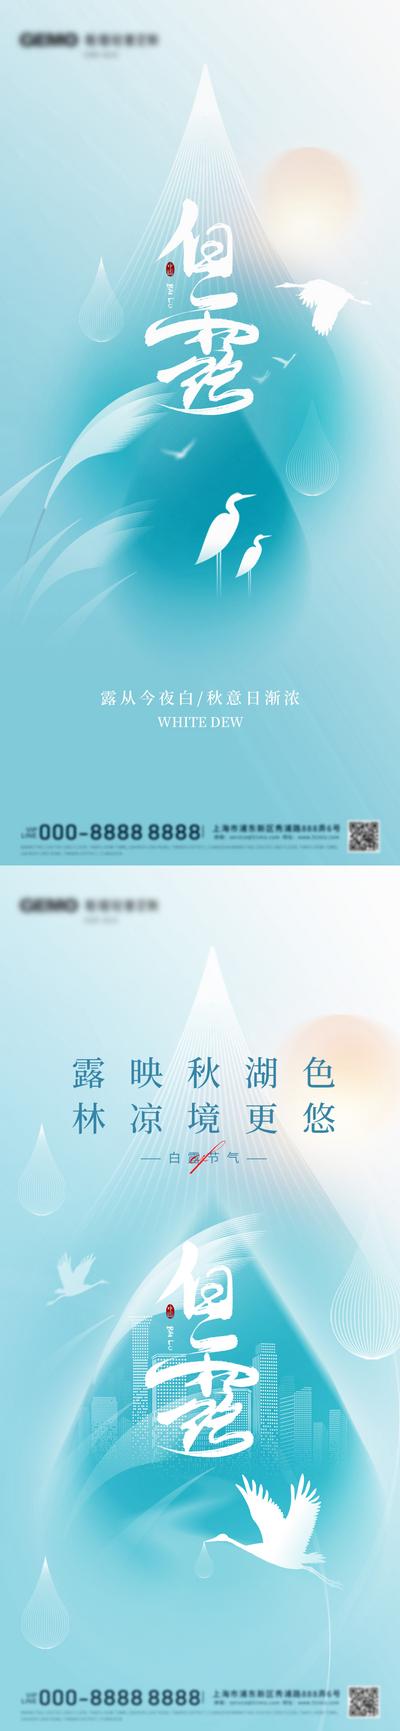 南门网 广告 海报 节气 白露 白鹭 简约 系列 品质